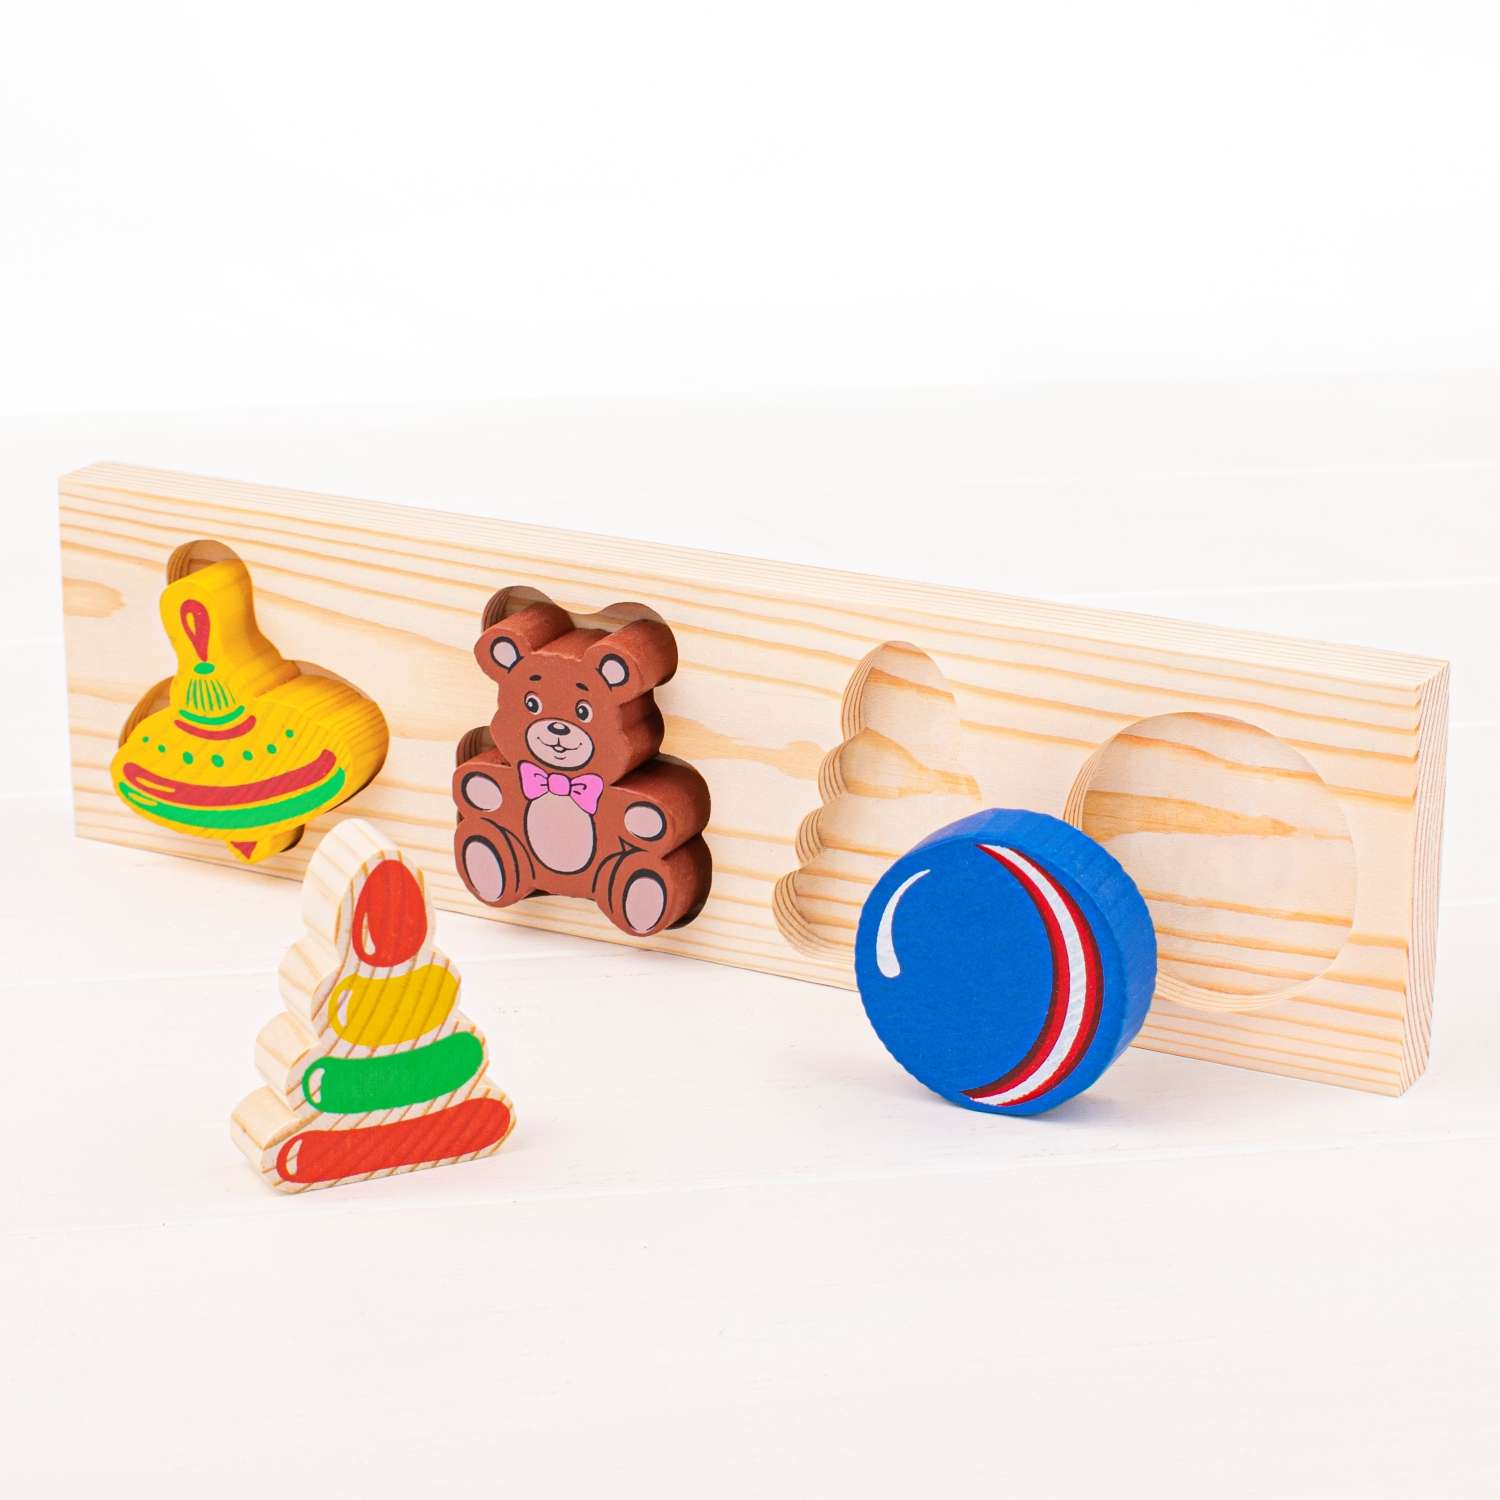 Рамка-Вкладыш Томик Игрушки 5 деталей 451 развивающая деревянная игрушка - фото 2